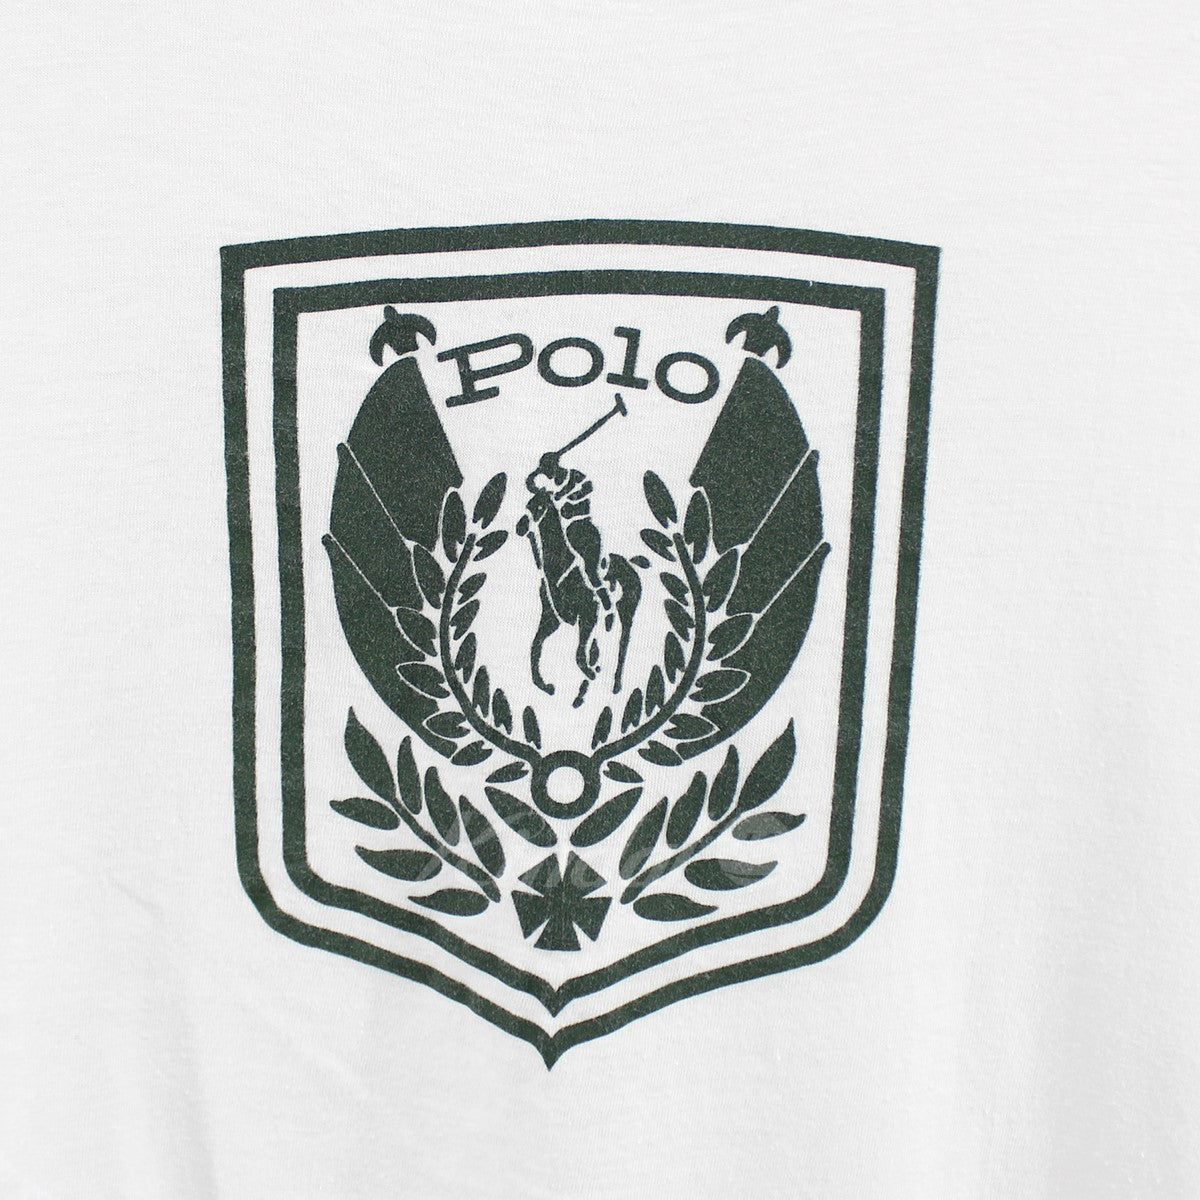 POLO RALPH LAUREN(ポロラルフローレン) エンブレム ロゴ Tシャツ 